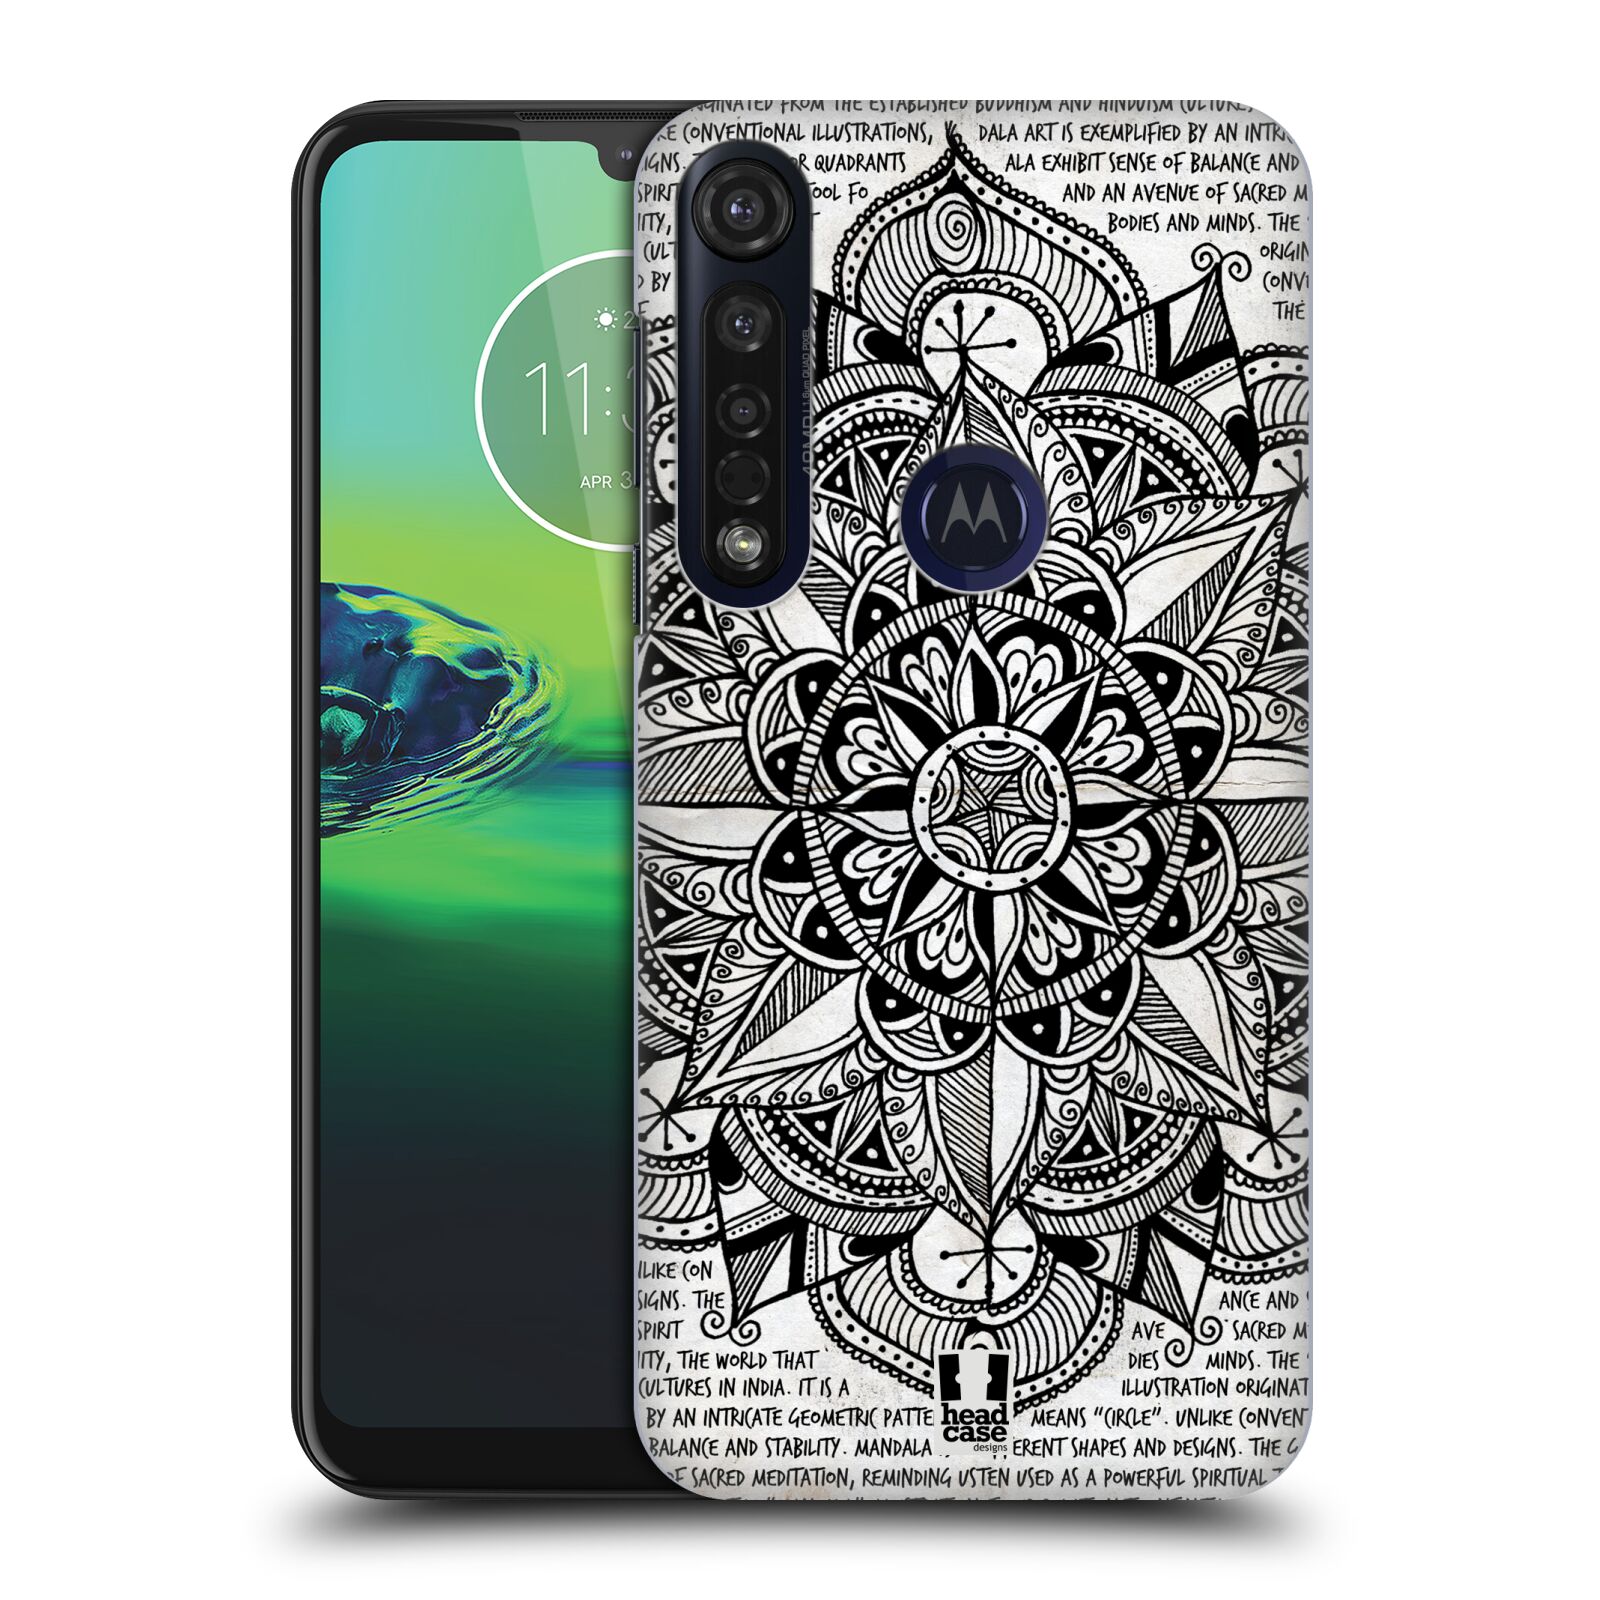 Pouzdro na mobil Motorola Moto G8 PLUS - HEAD CASE - vzor Indie Mandala slunce barevná ČERNÁ A BÍLÁ MAPA